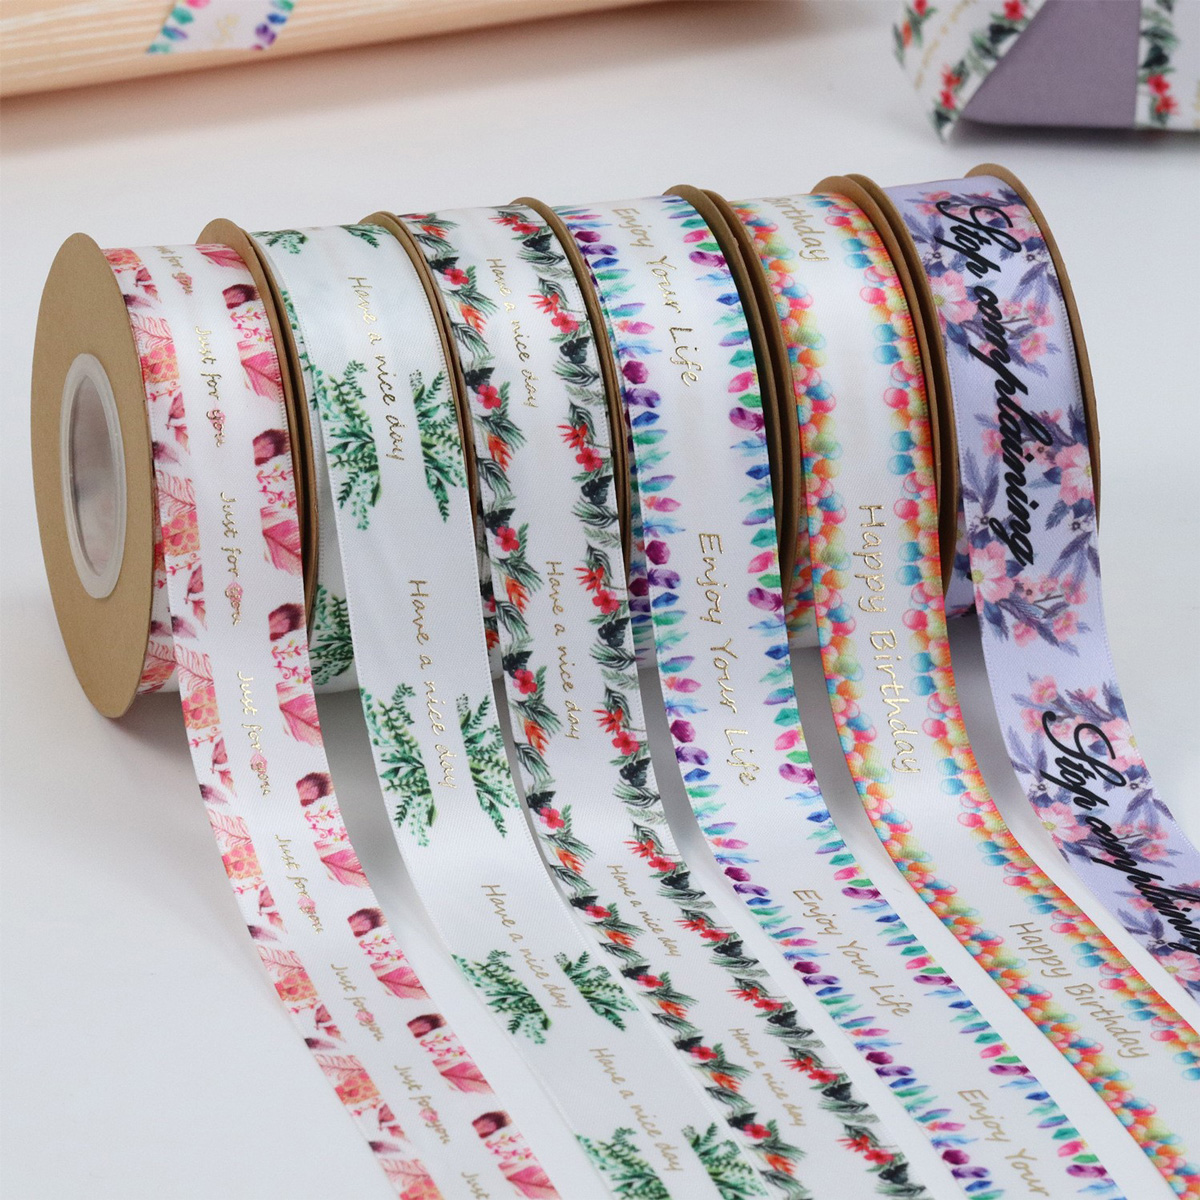 厦门鹭得织带饰品有限公司将亮相CIPPME上海国际包装展